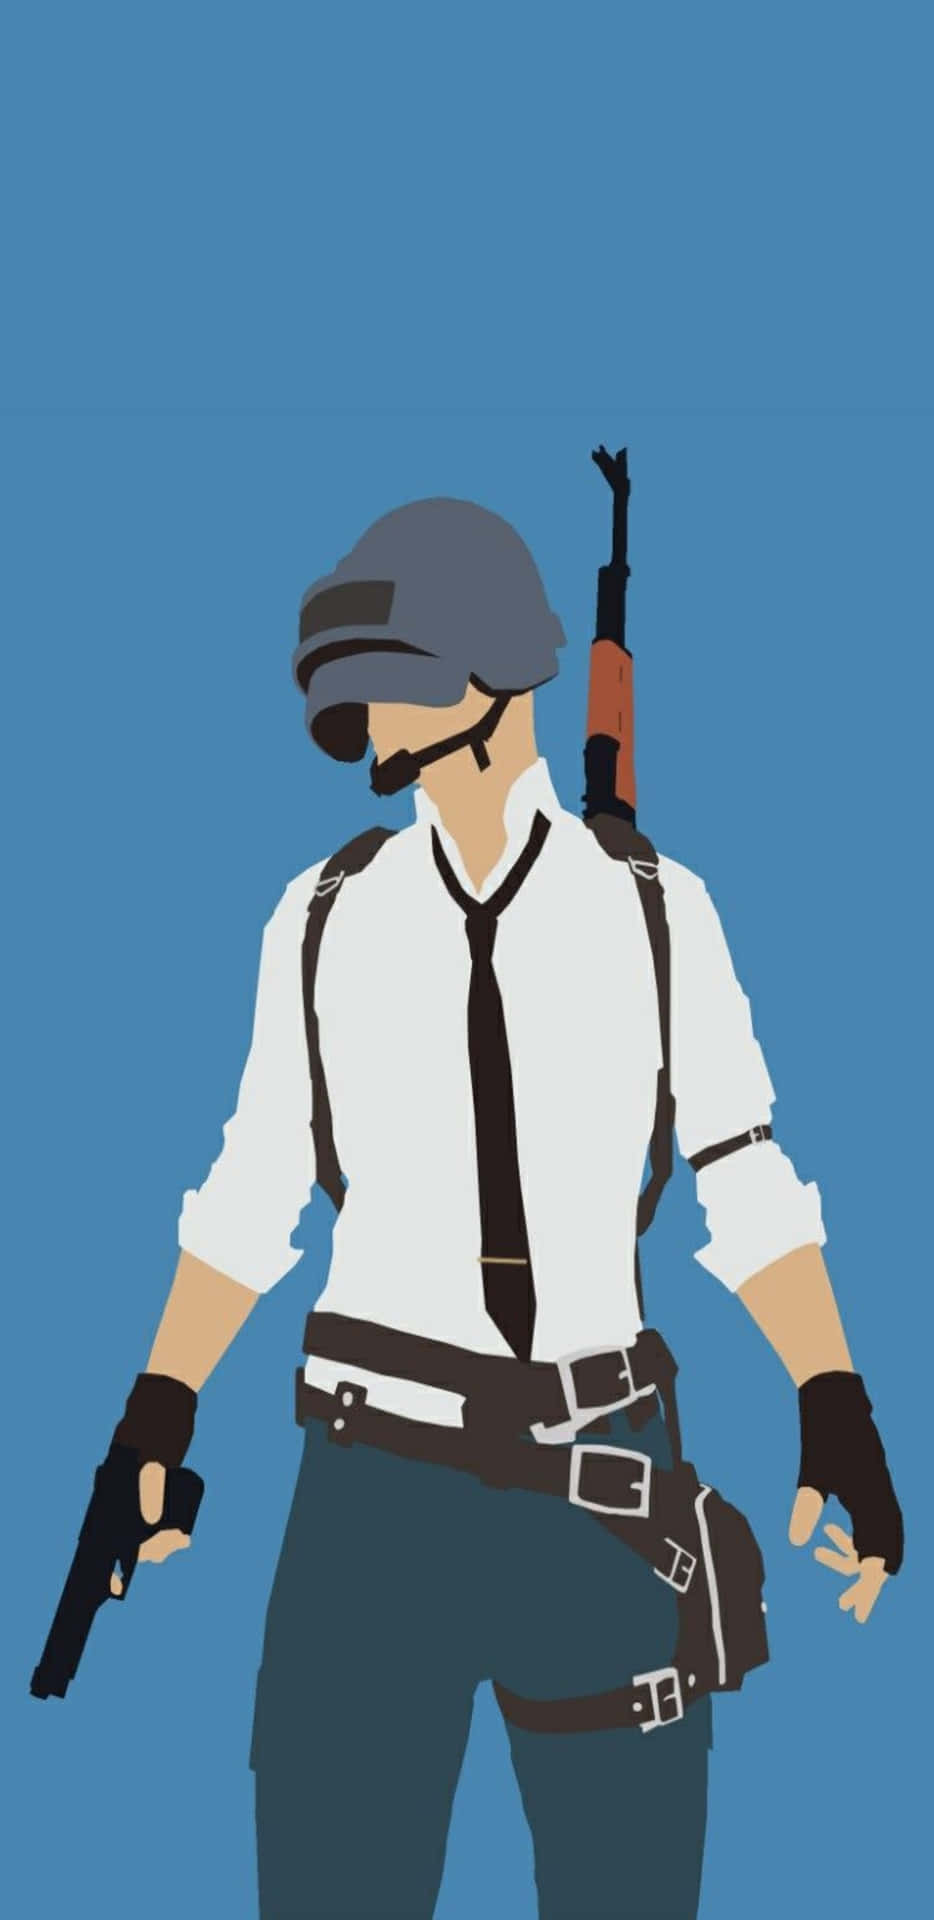 Pixel3xl-spelarens Battlegrounds Bakgrundsmålning Av En Beväpnad Man.